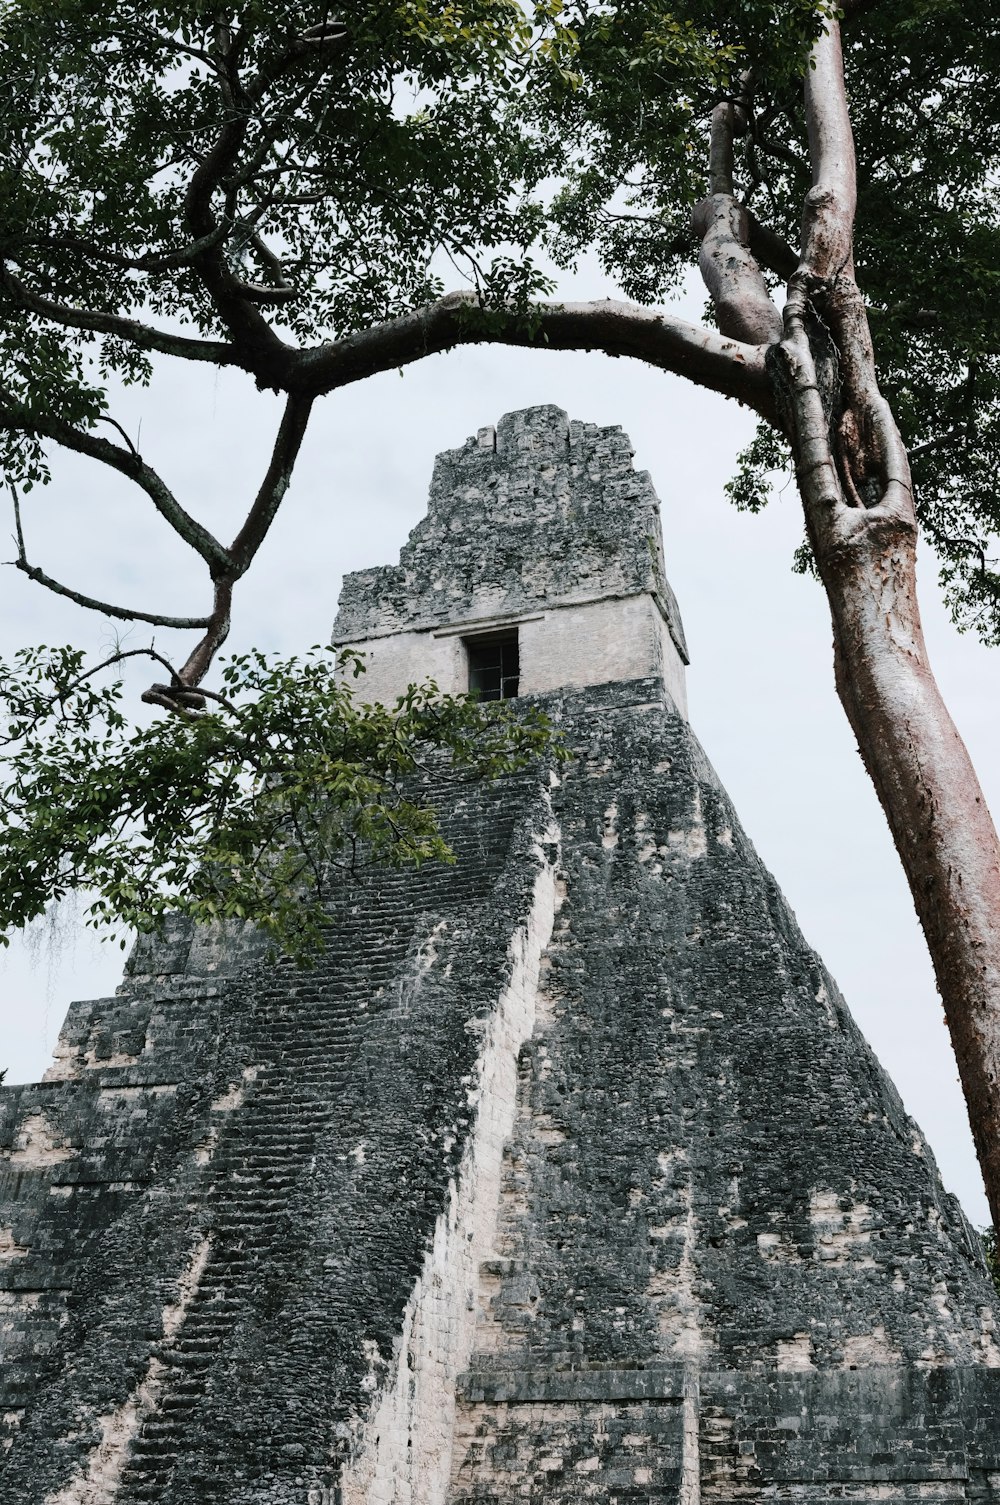 una gran pirámide con un árbol frente a ella